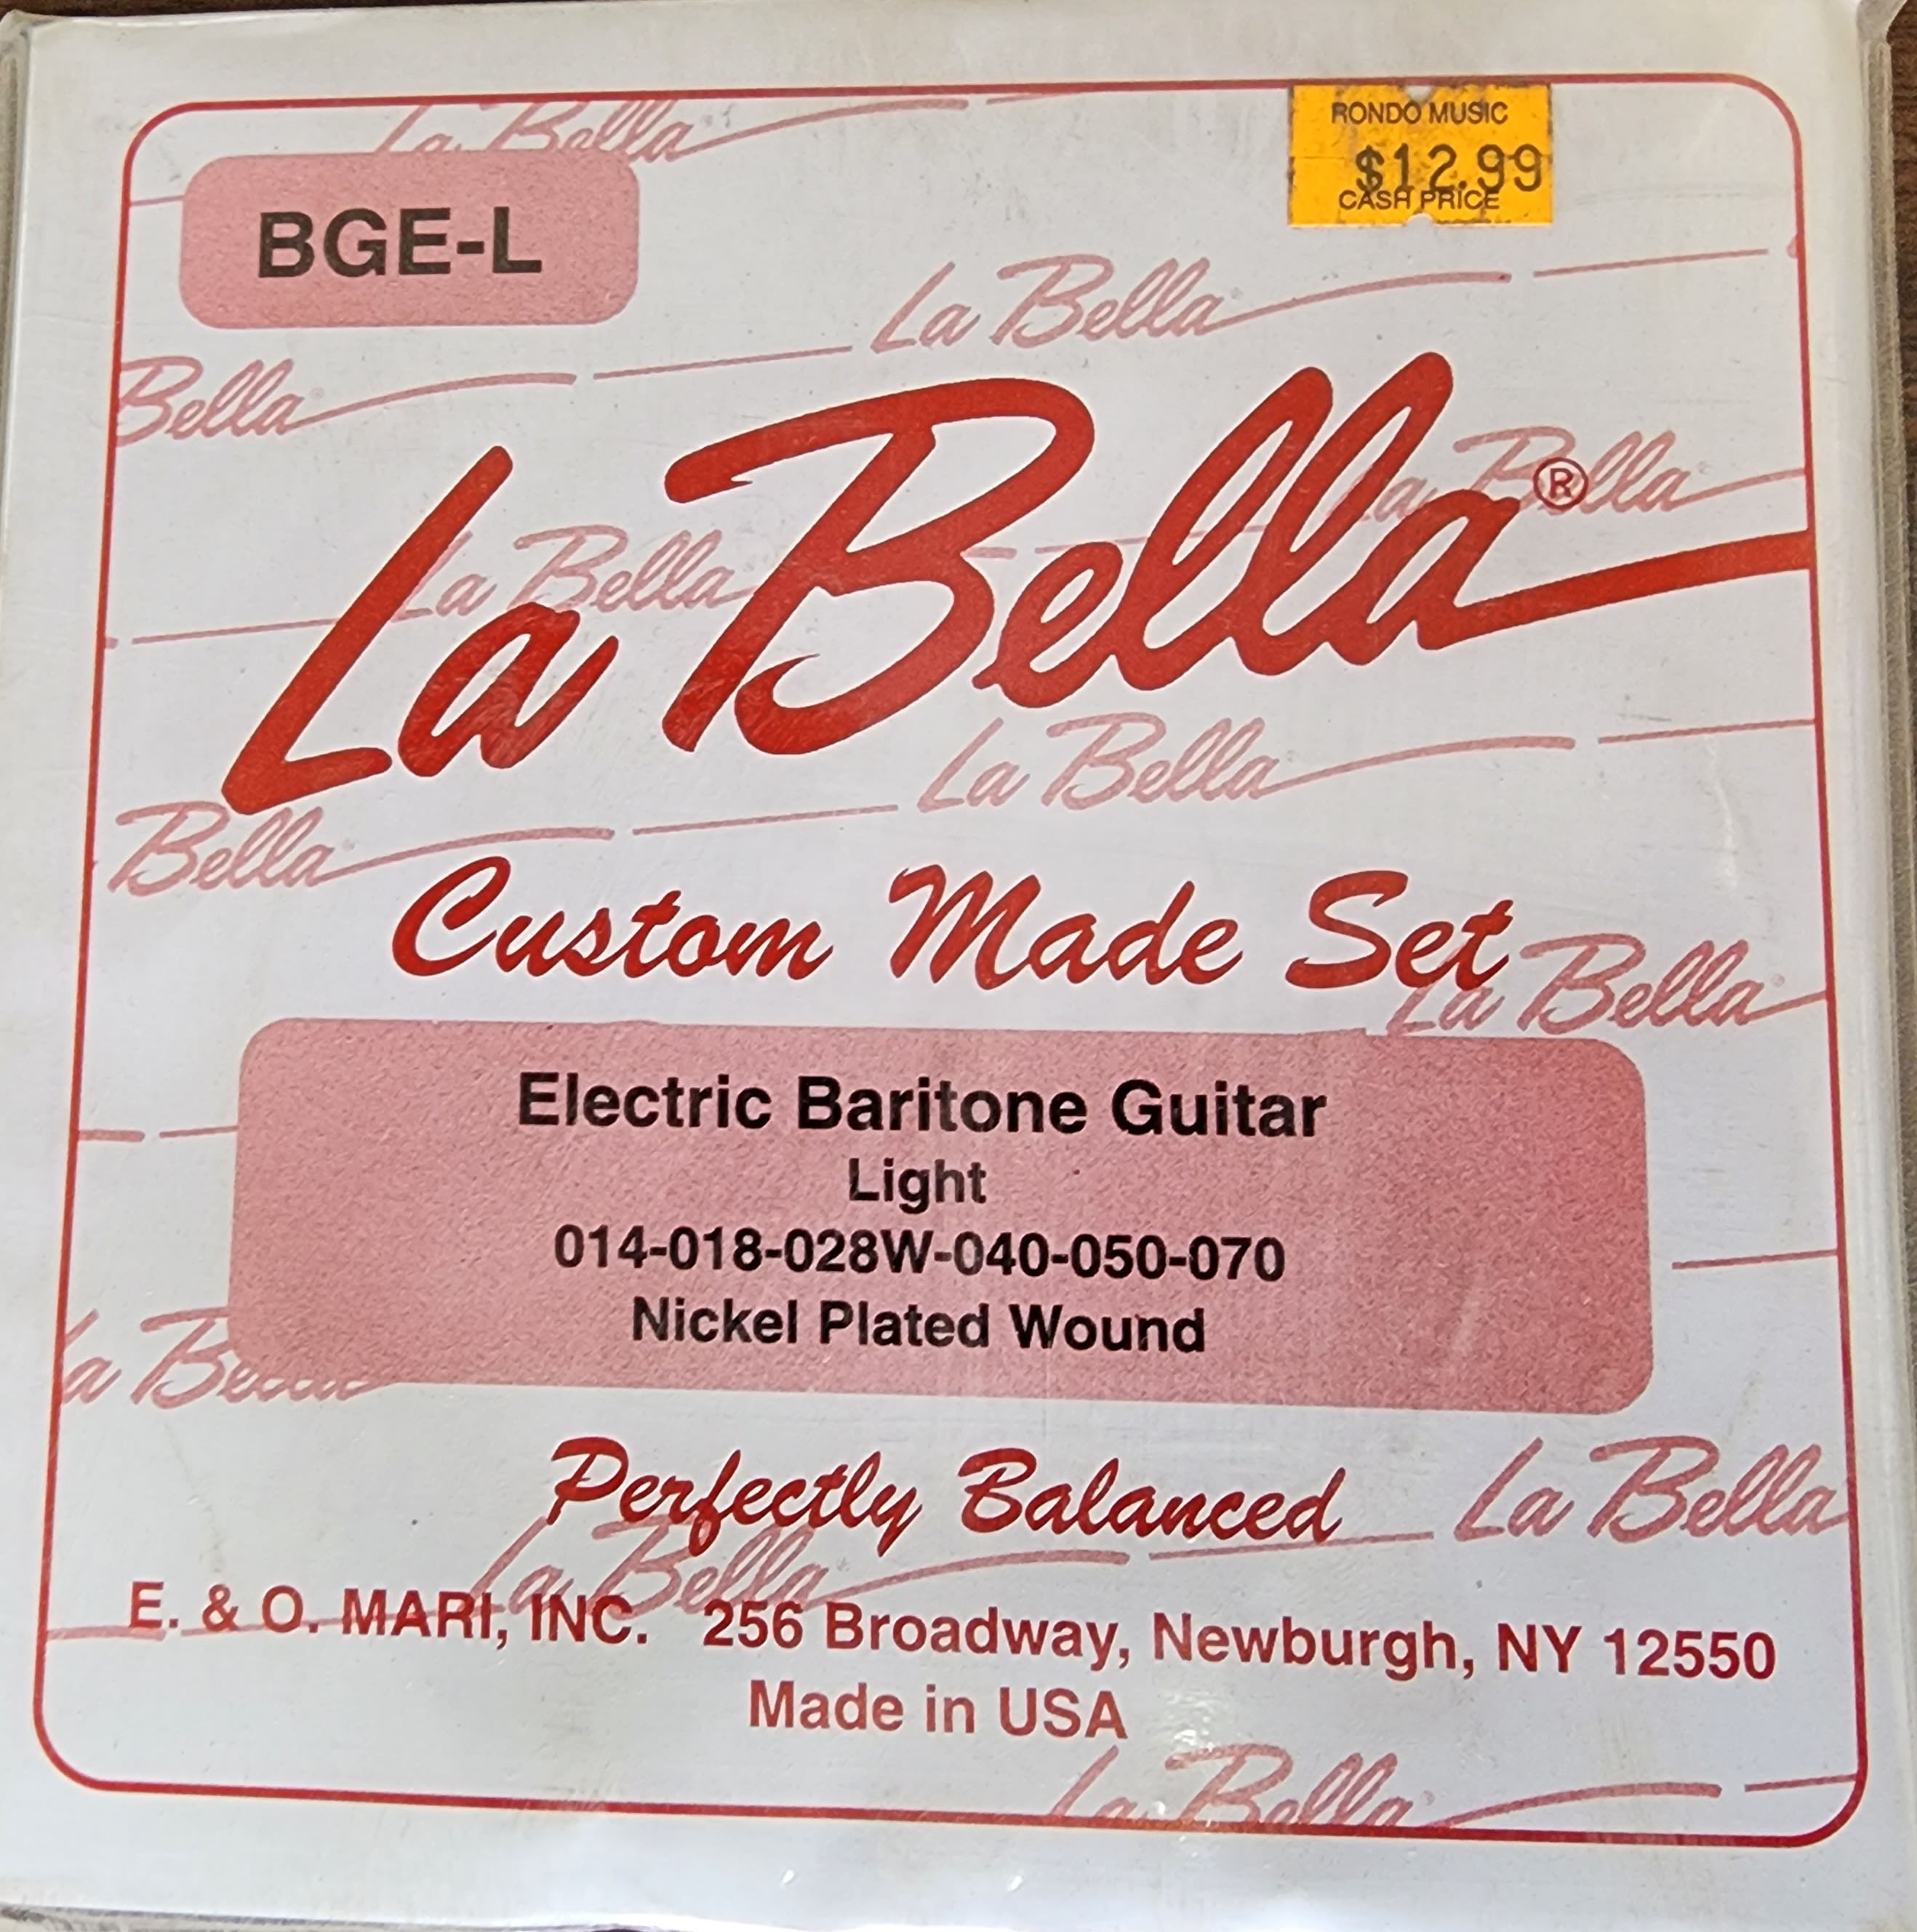 labella-BGE-L1